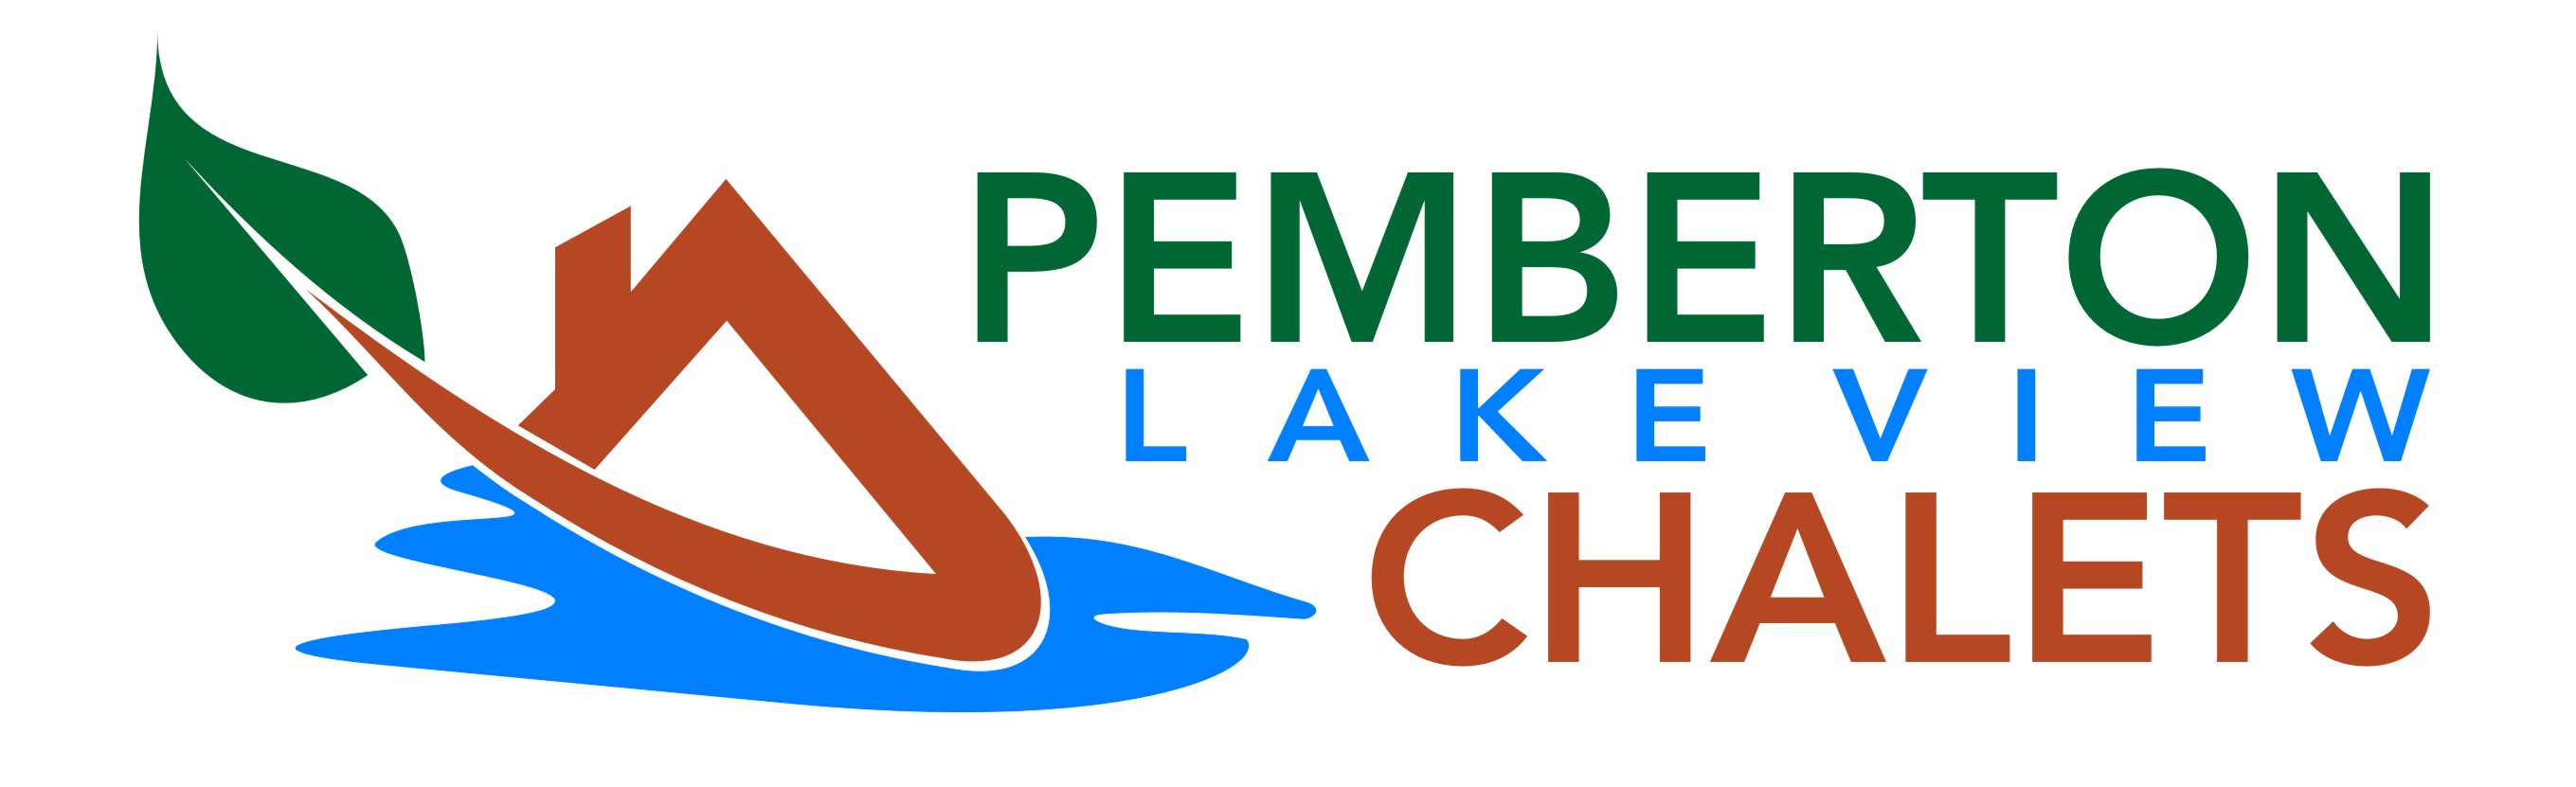 Pemberton Lake View Chalets Main Logo